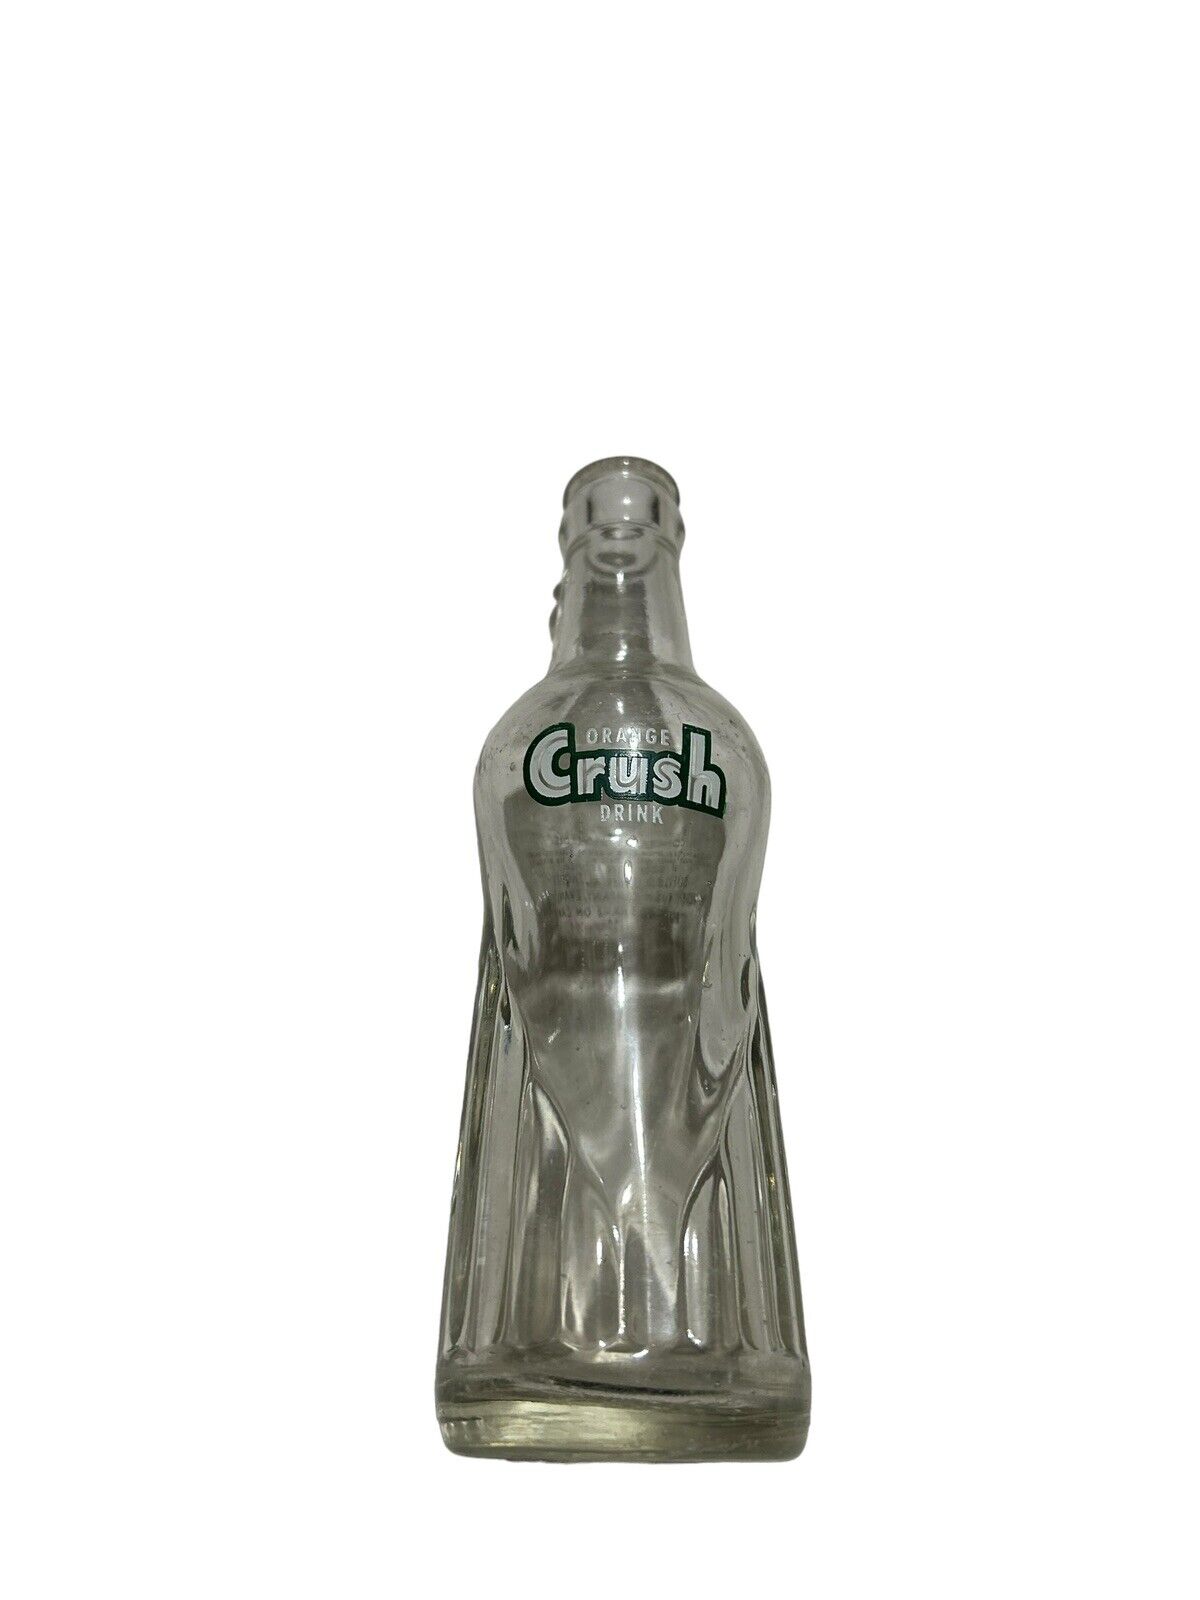 Vintage Crush Soda Bottle 7 fl. oz.